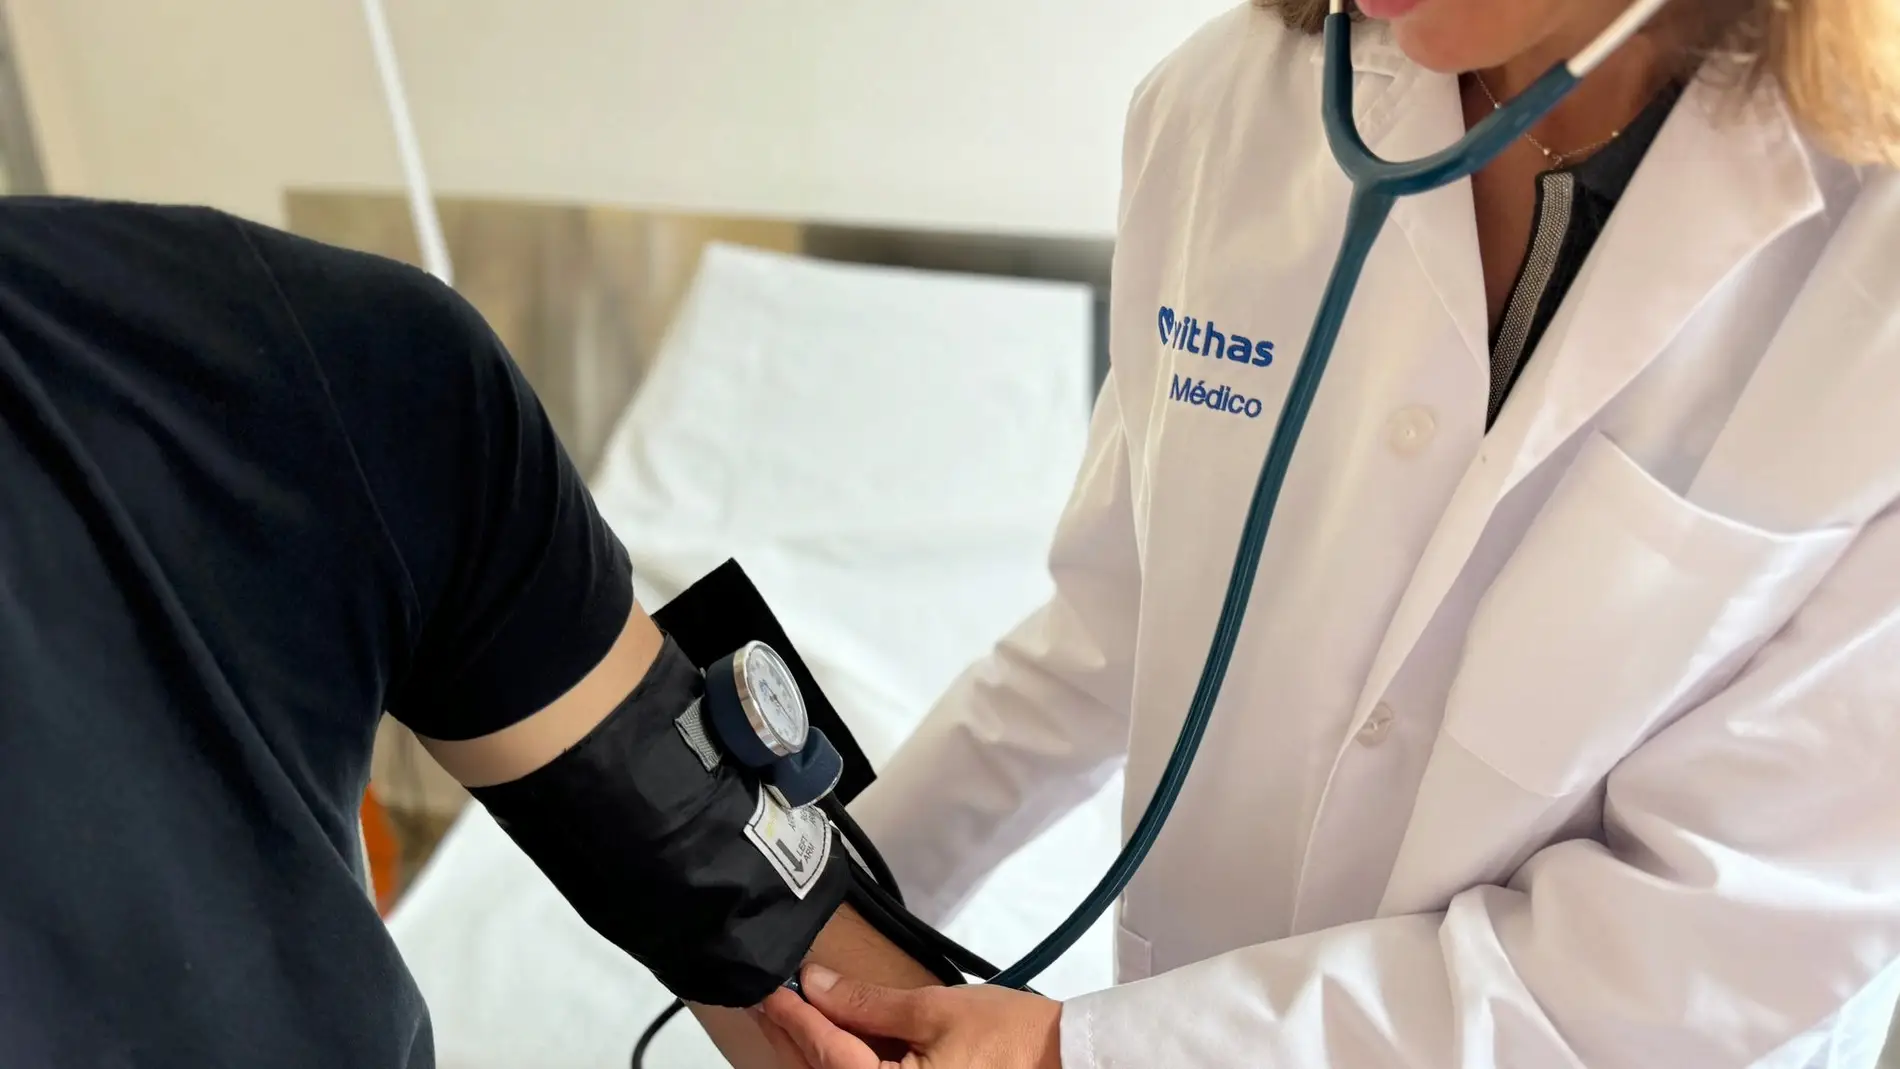 Los especialistas de los hospitales Vithas en Andalucía ponen el foco en reducir la hipertensión arterial